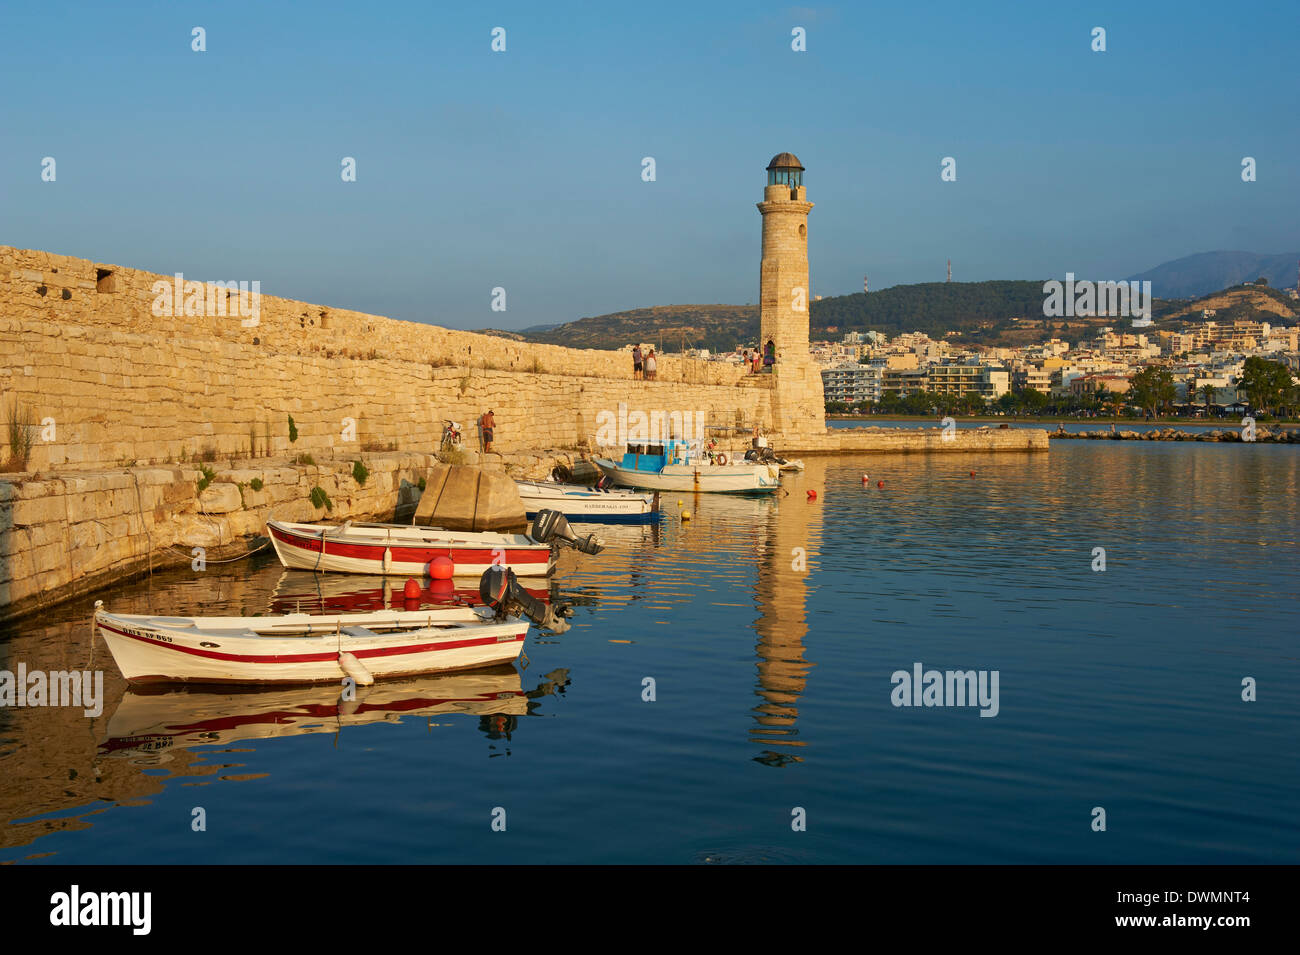 Port vénitien de Rethymnon, Crète, îles grecques, Grèce, Europe Banque D'Images